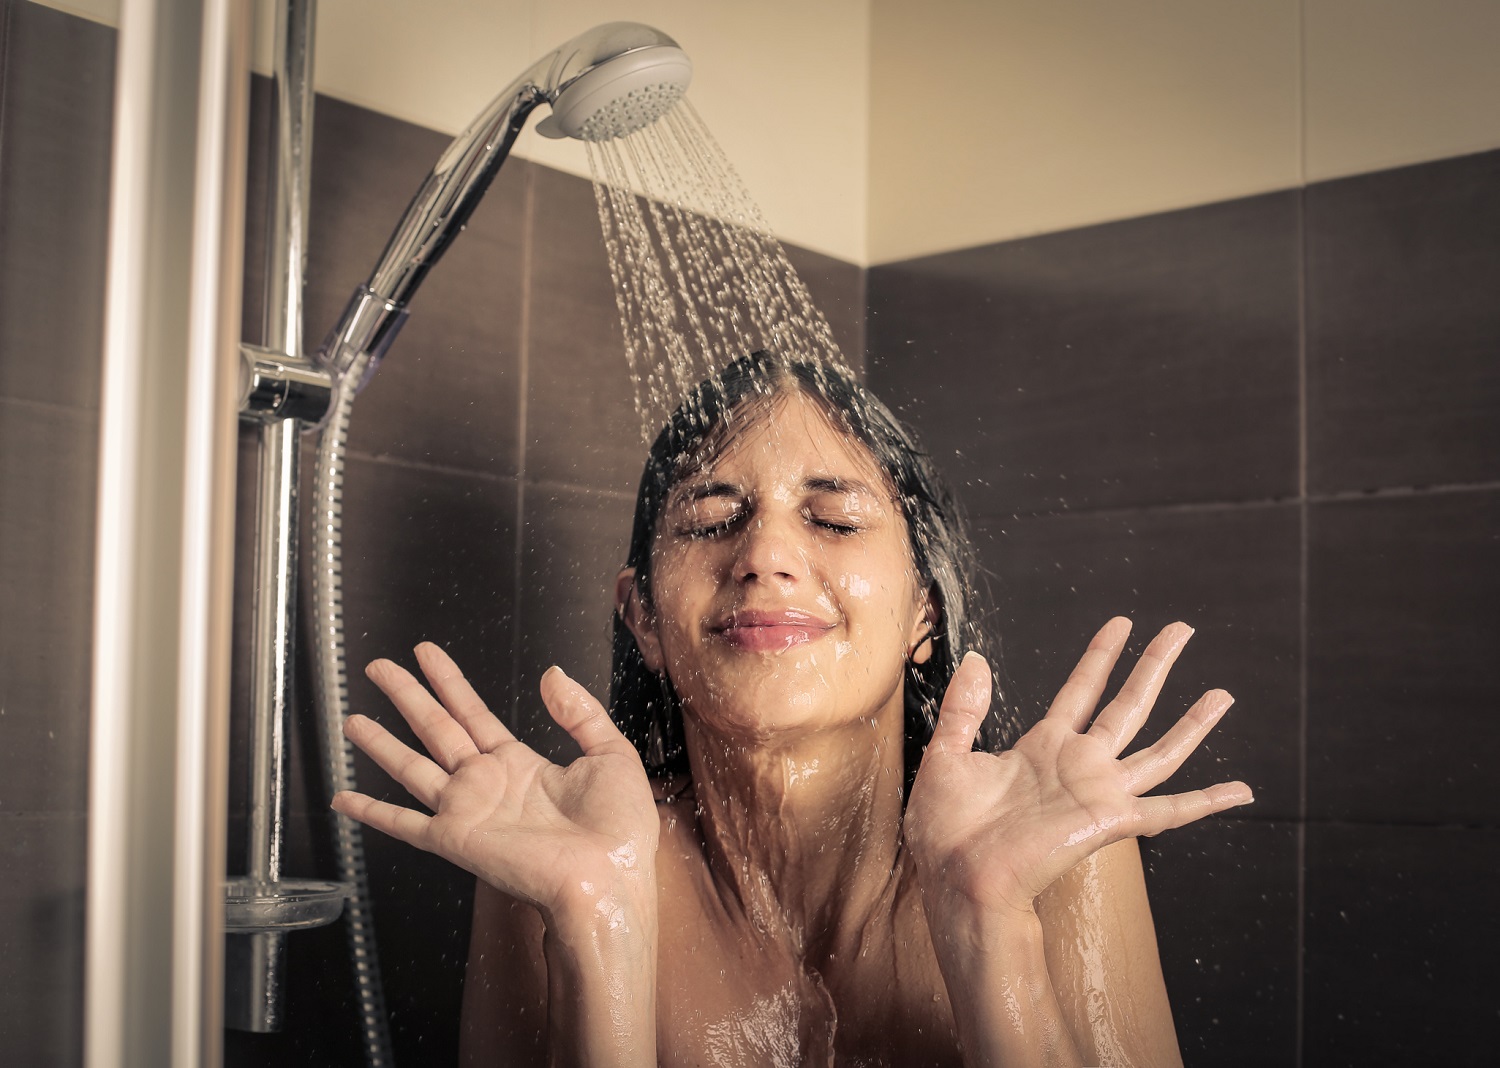 Baño con agua fría o caliente, ¿cuál tiene mejores beneficios para la salud?